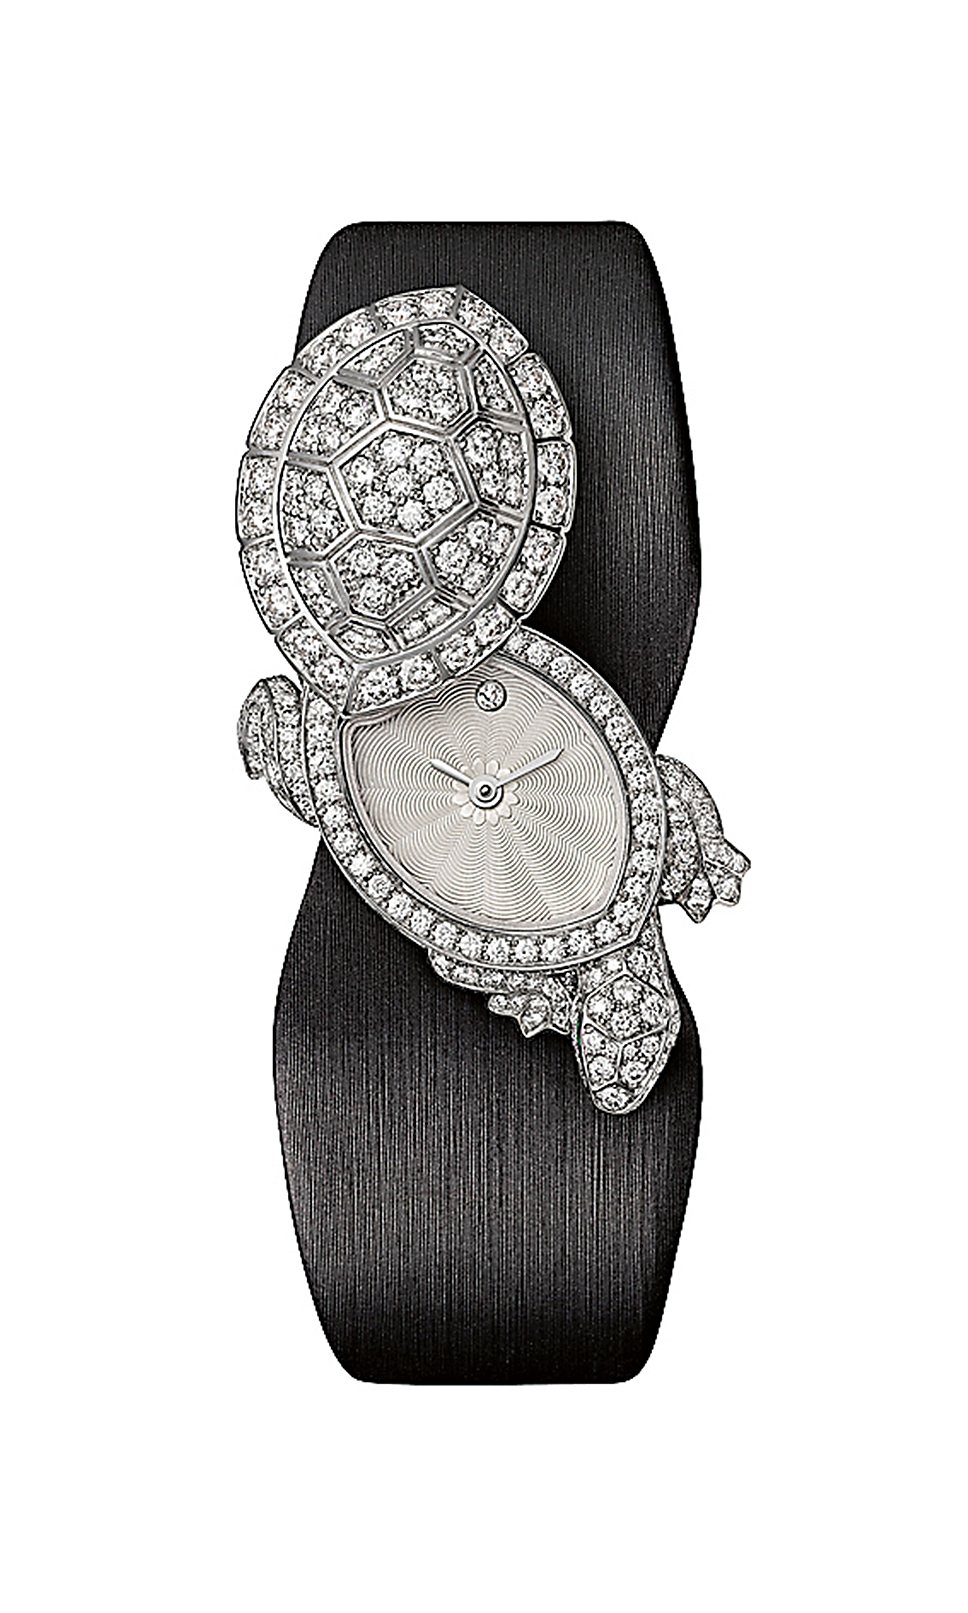 Cartier, Les Heures Fabuleuses, Tortue Secret Watch, 2013: часы с корпусом из белого золота представлены в двух версиях -- с крышкой, украшенной белыми бриллиантами, и с крышкой, созданной из морганита и также украшенной драгоценными камнями